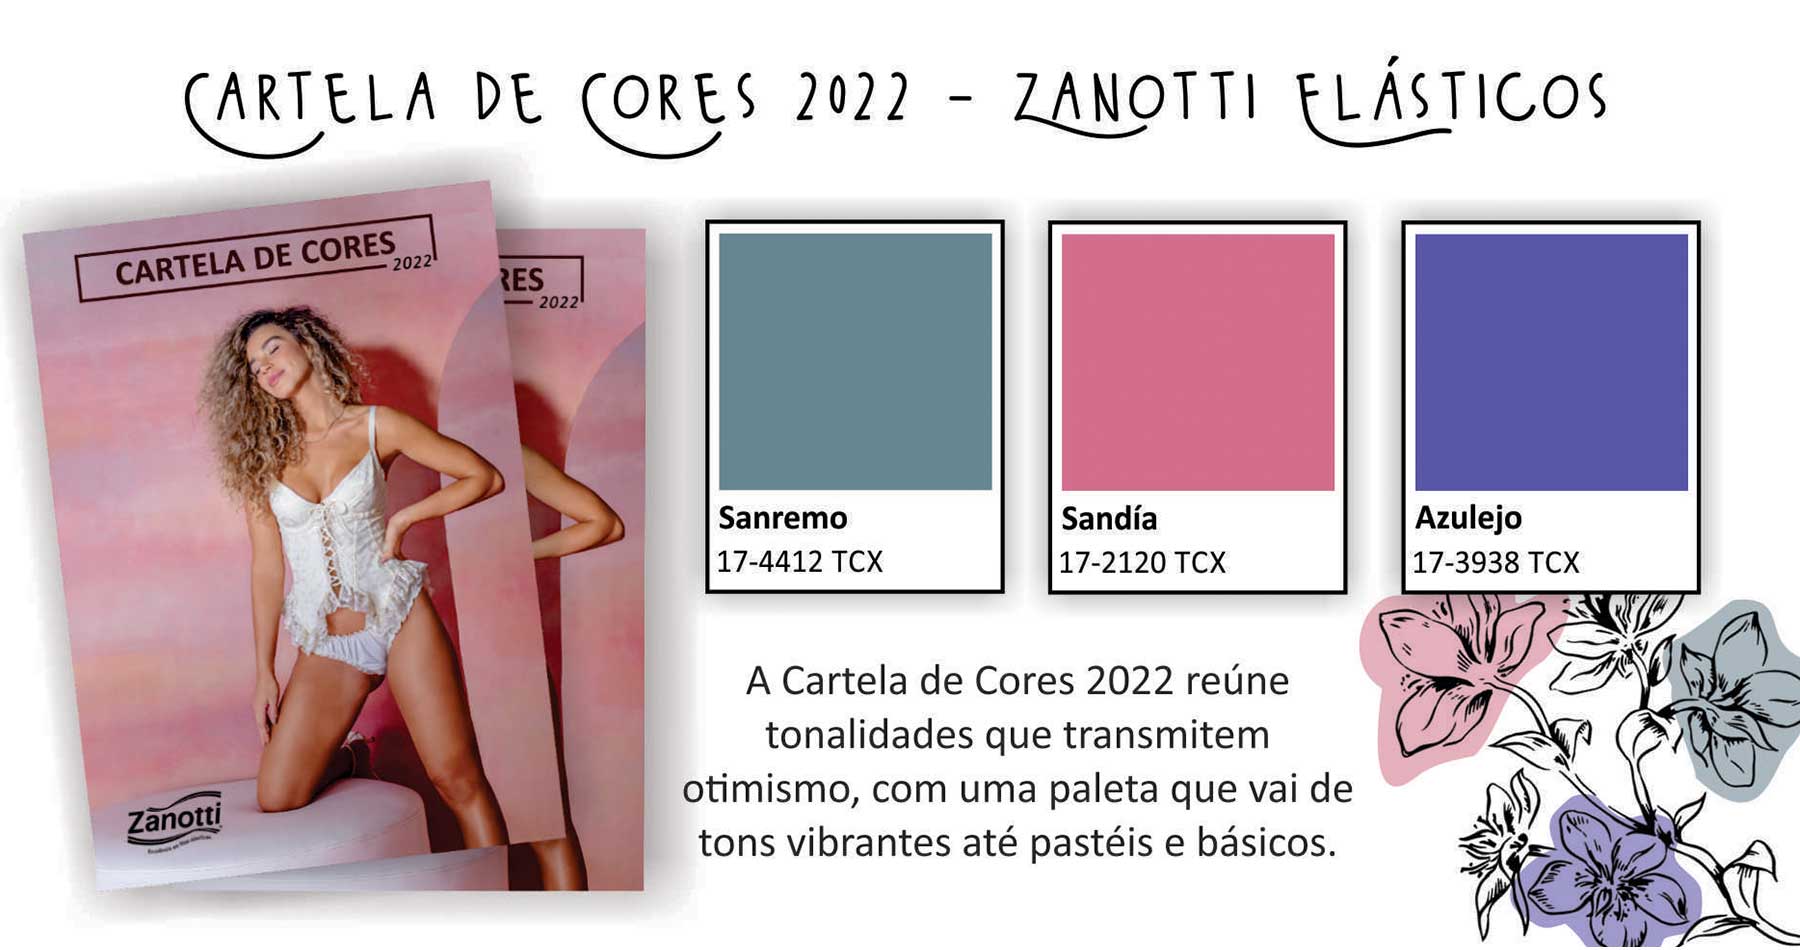 imagem contendo uma foto da cartela de cores da Zanotti, além das três cores lançamento da cartela de cores 2022